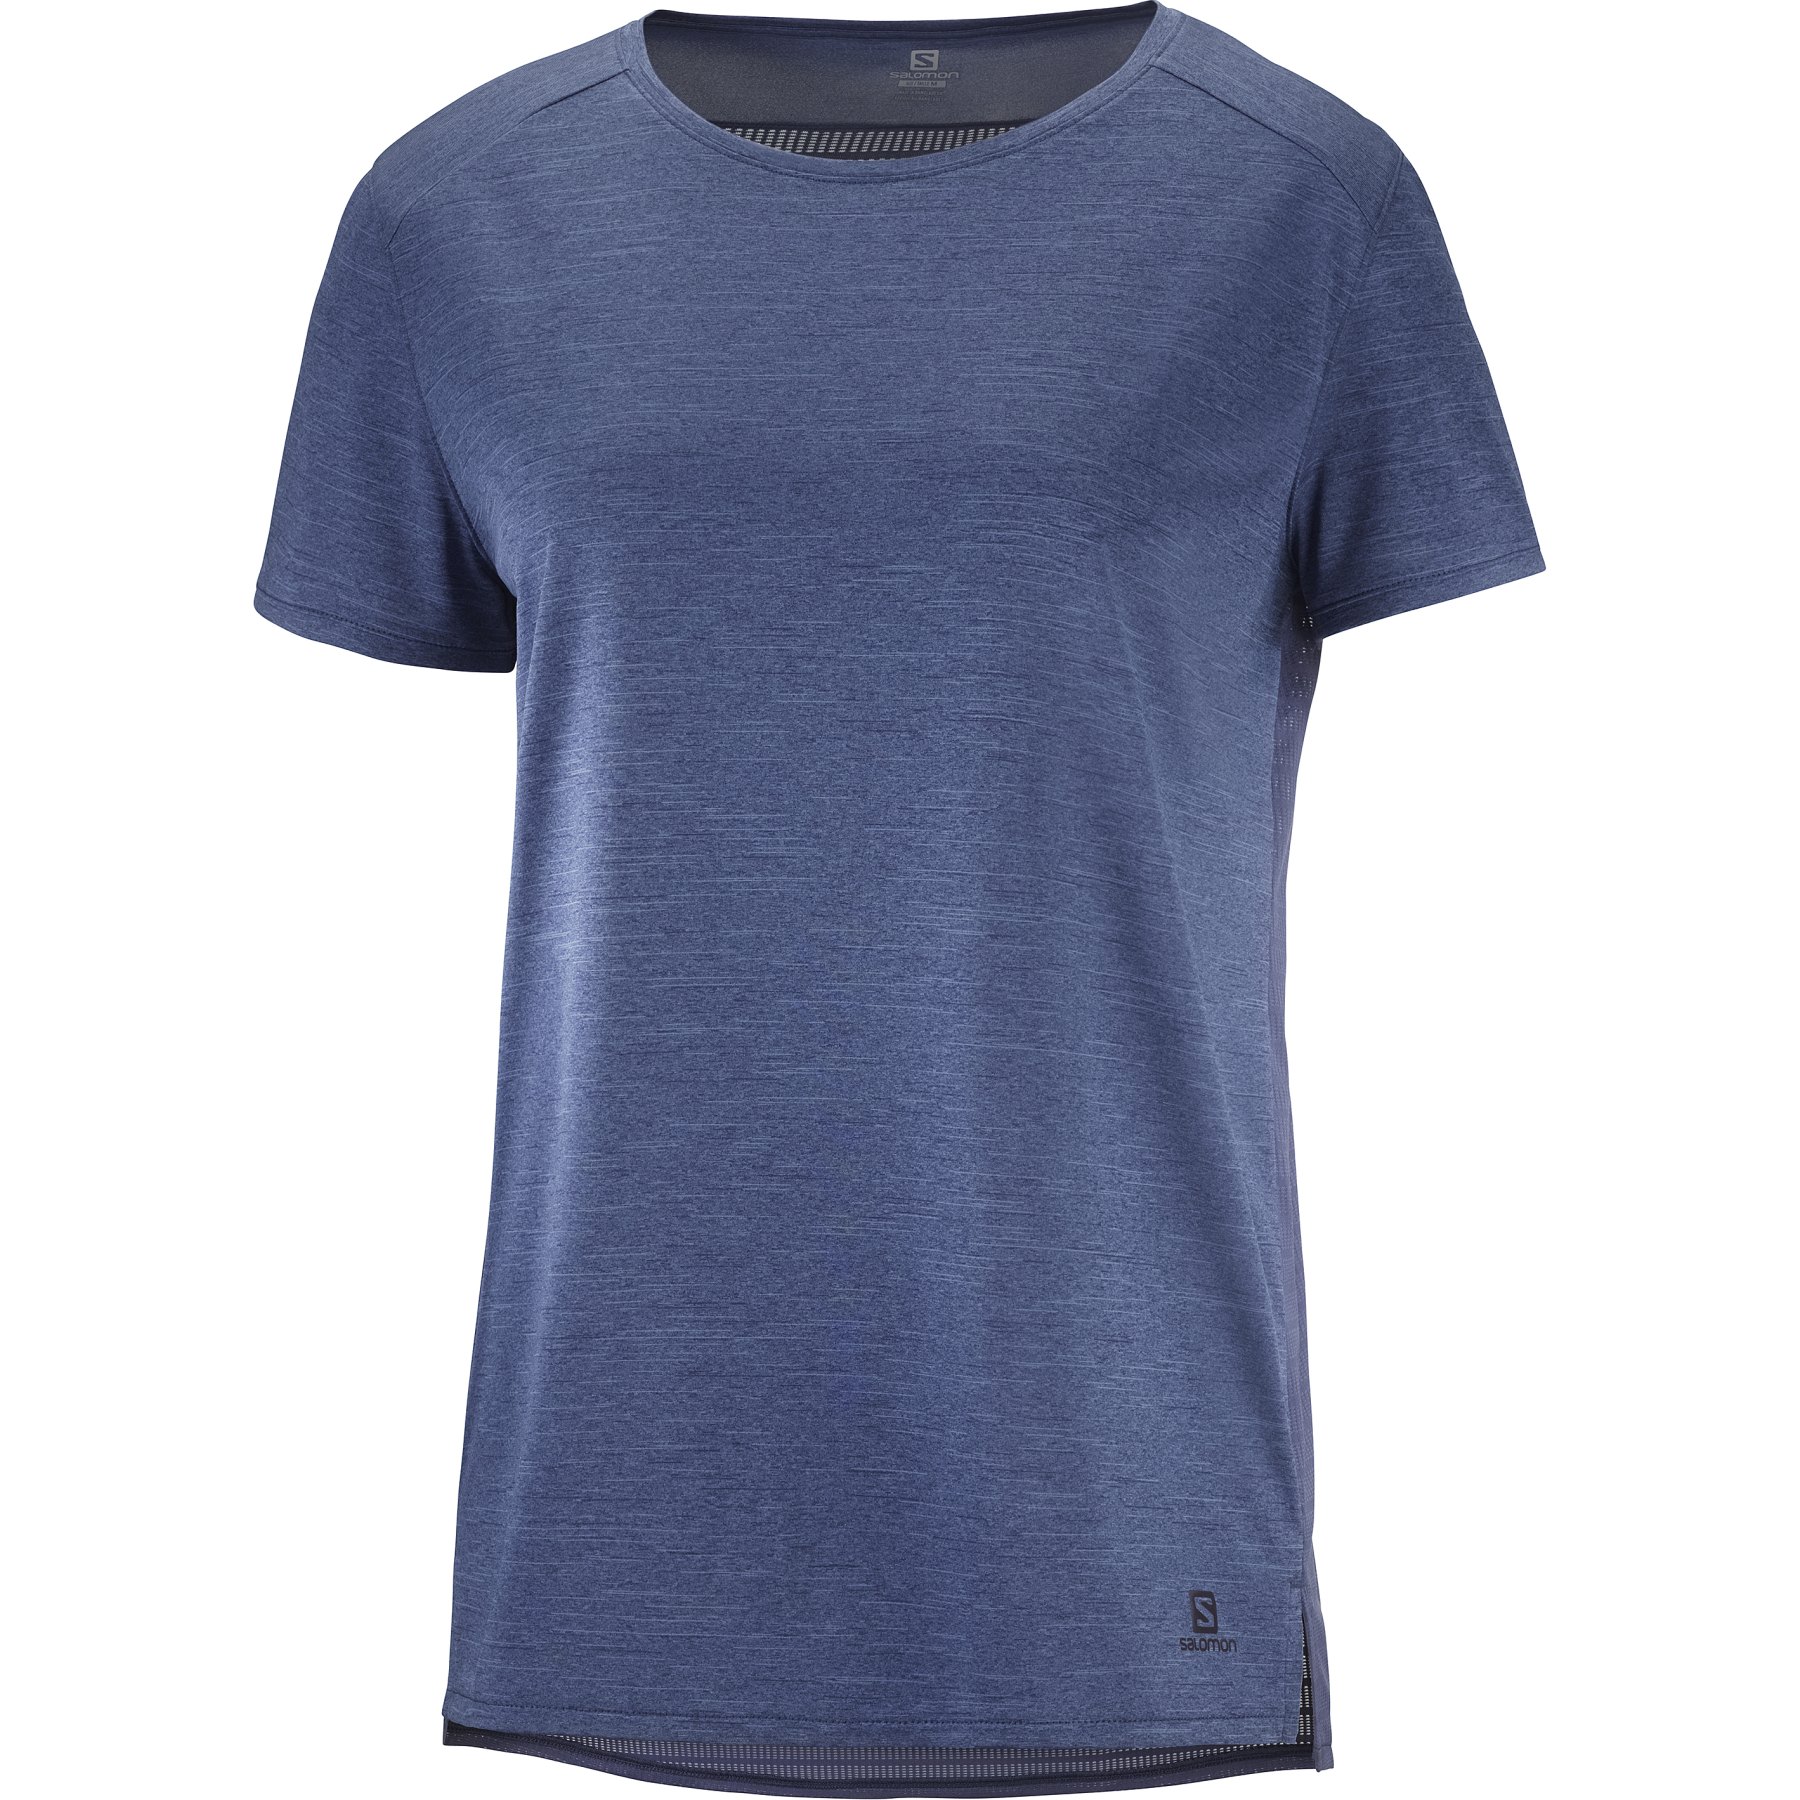 Produktbild von Salomon Outline Summer T-Shirt Damen - mood indigo